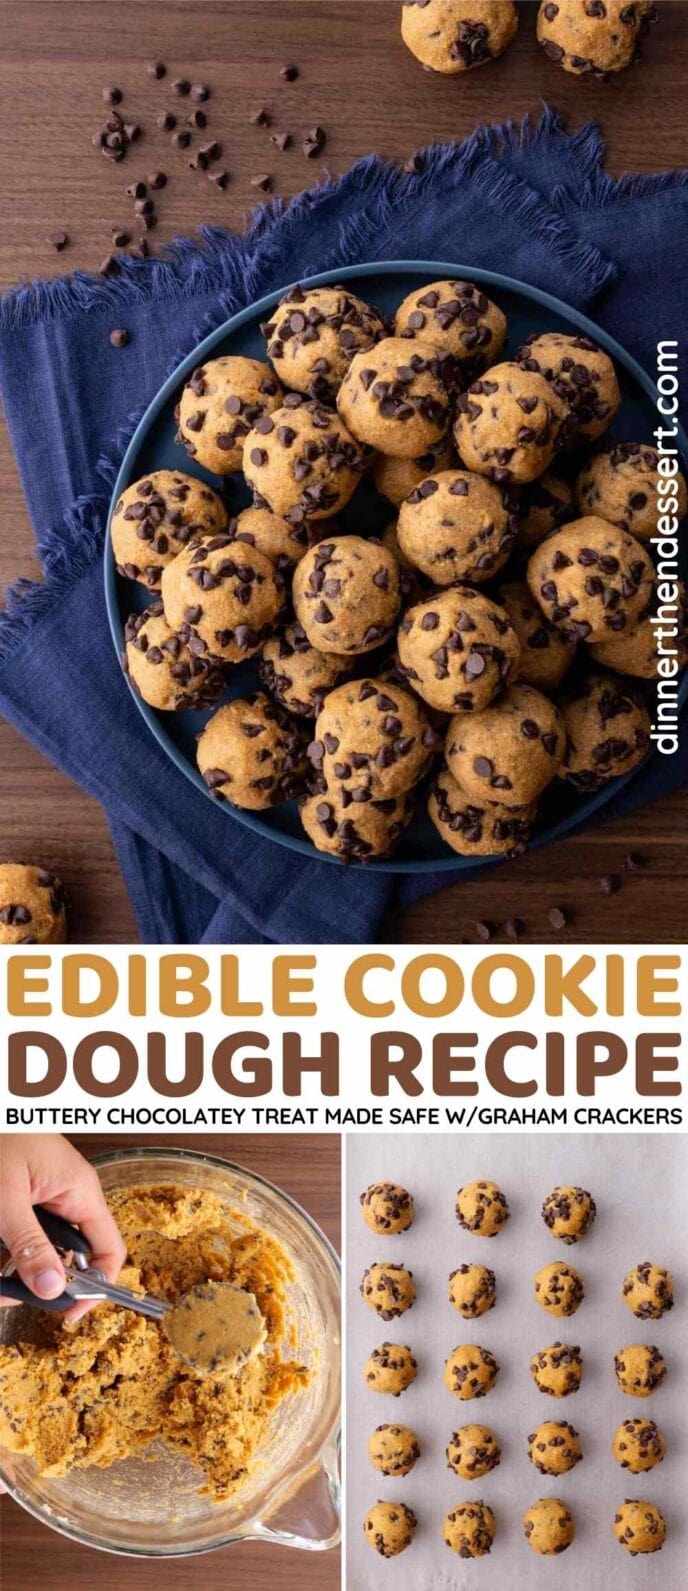 Edible Cookie Dough collage